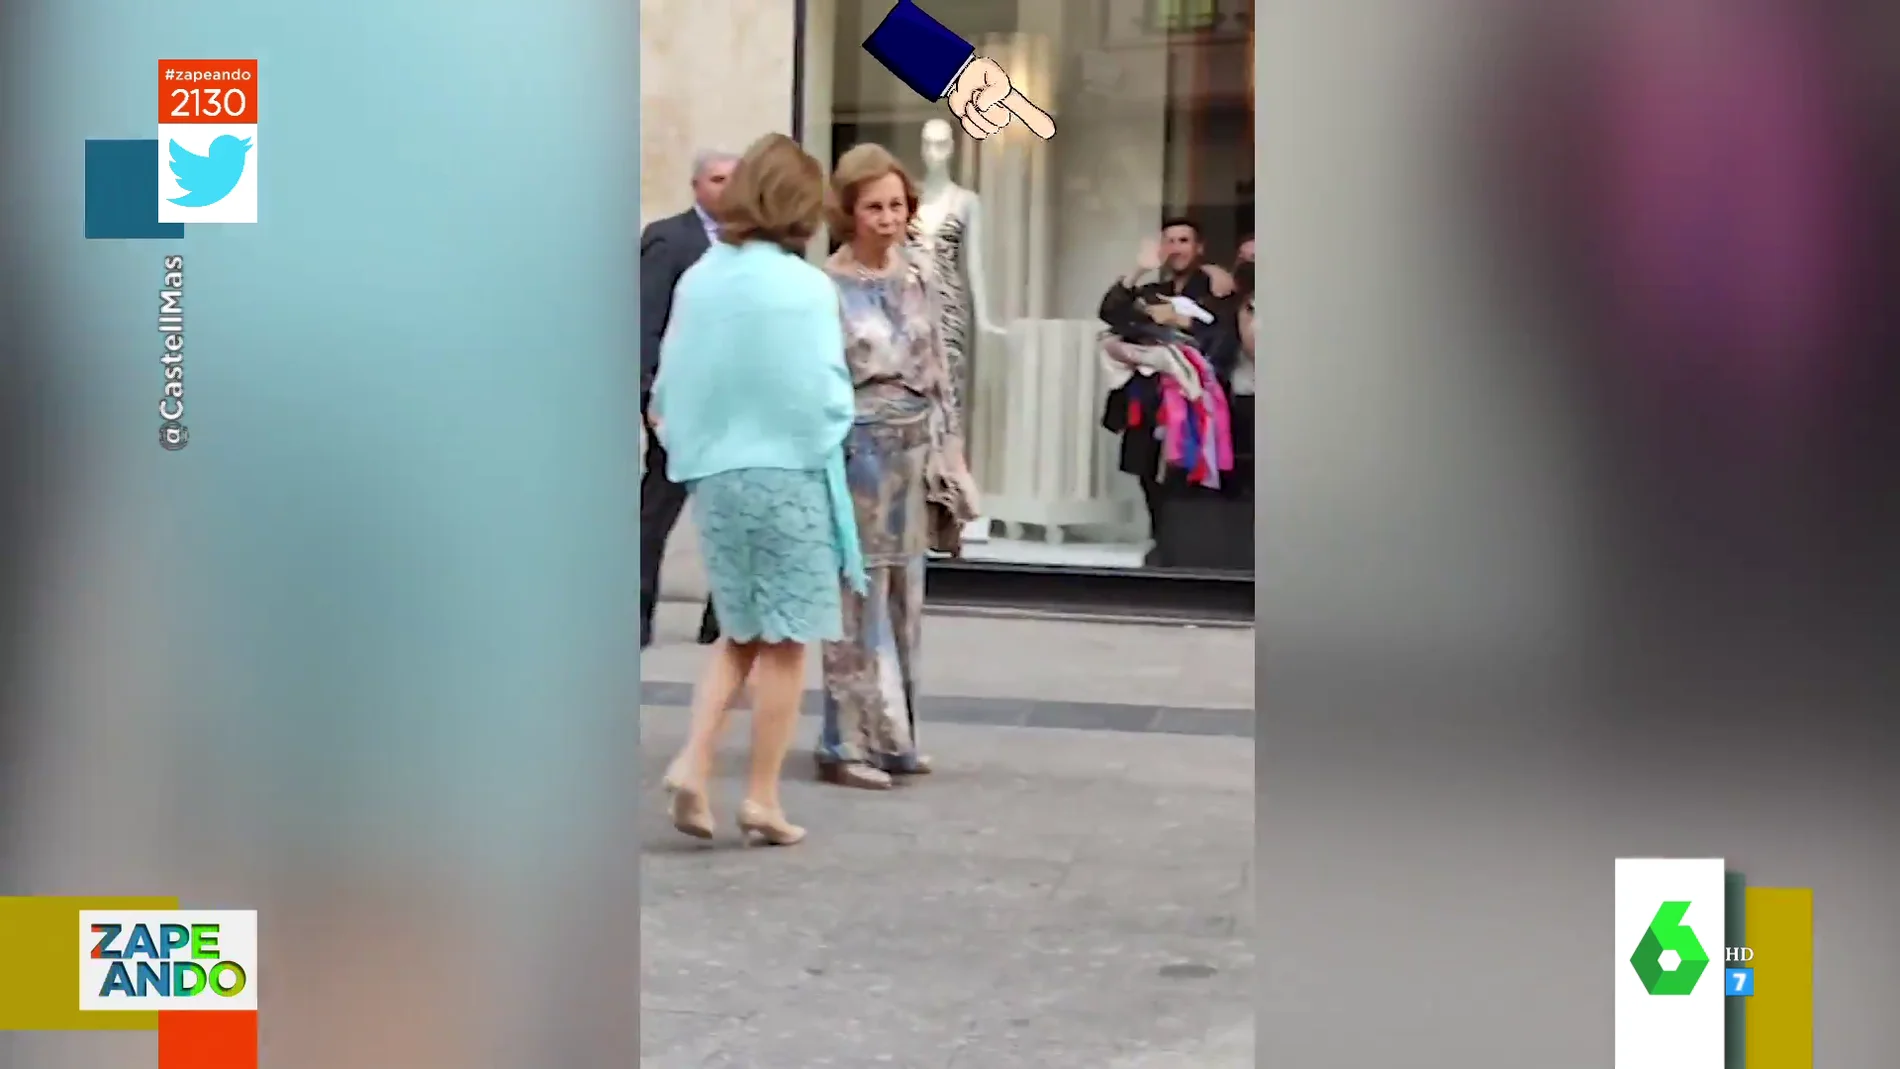 El viral de un dependiente de Zara saludando a la reina Sofía tras un escaparate mientras ella pasa de él